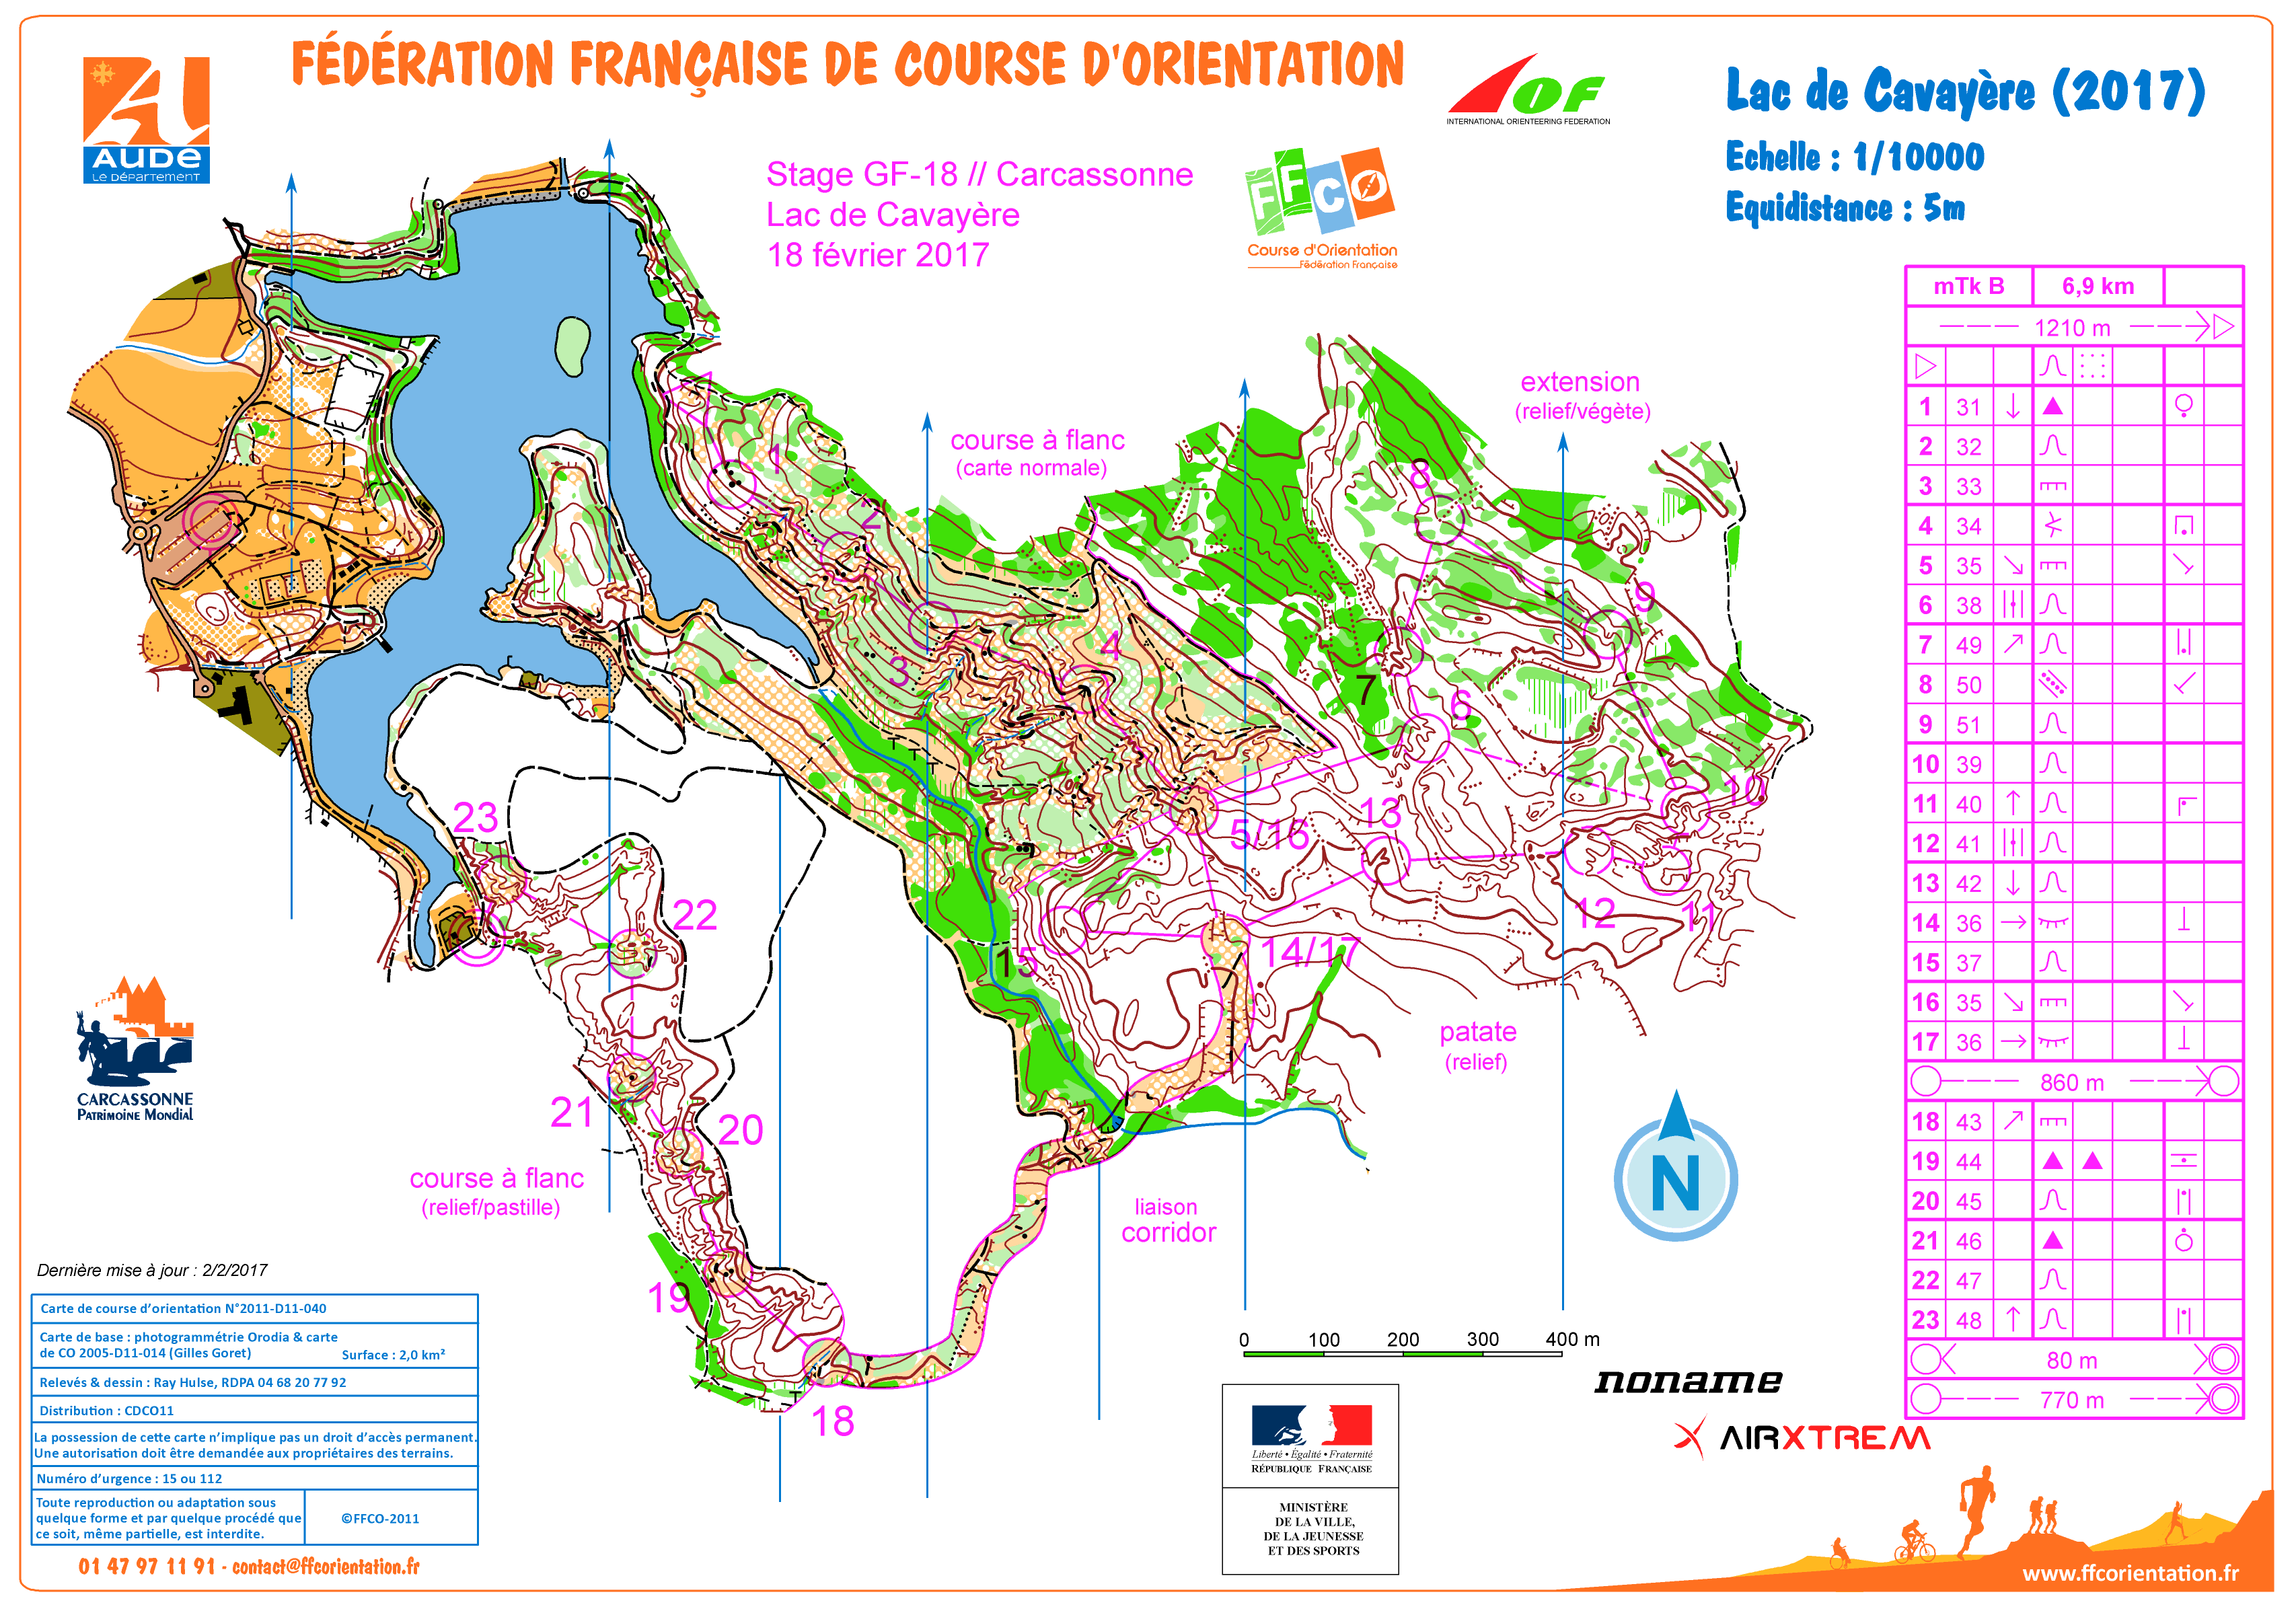 mTk Lac de Cavayère j2 stage gf-18 Carcassonne (18-02-2017)